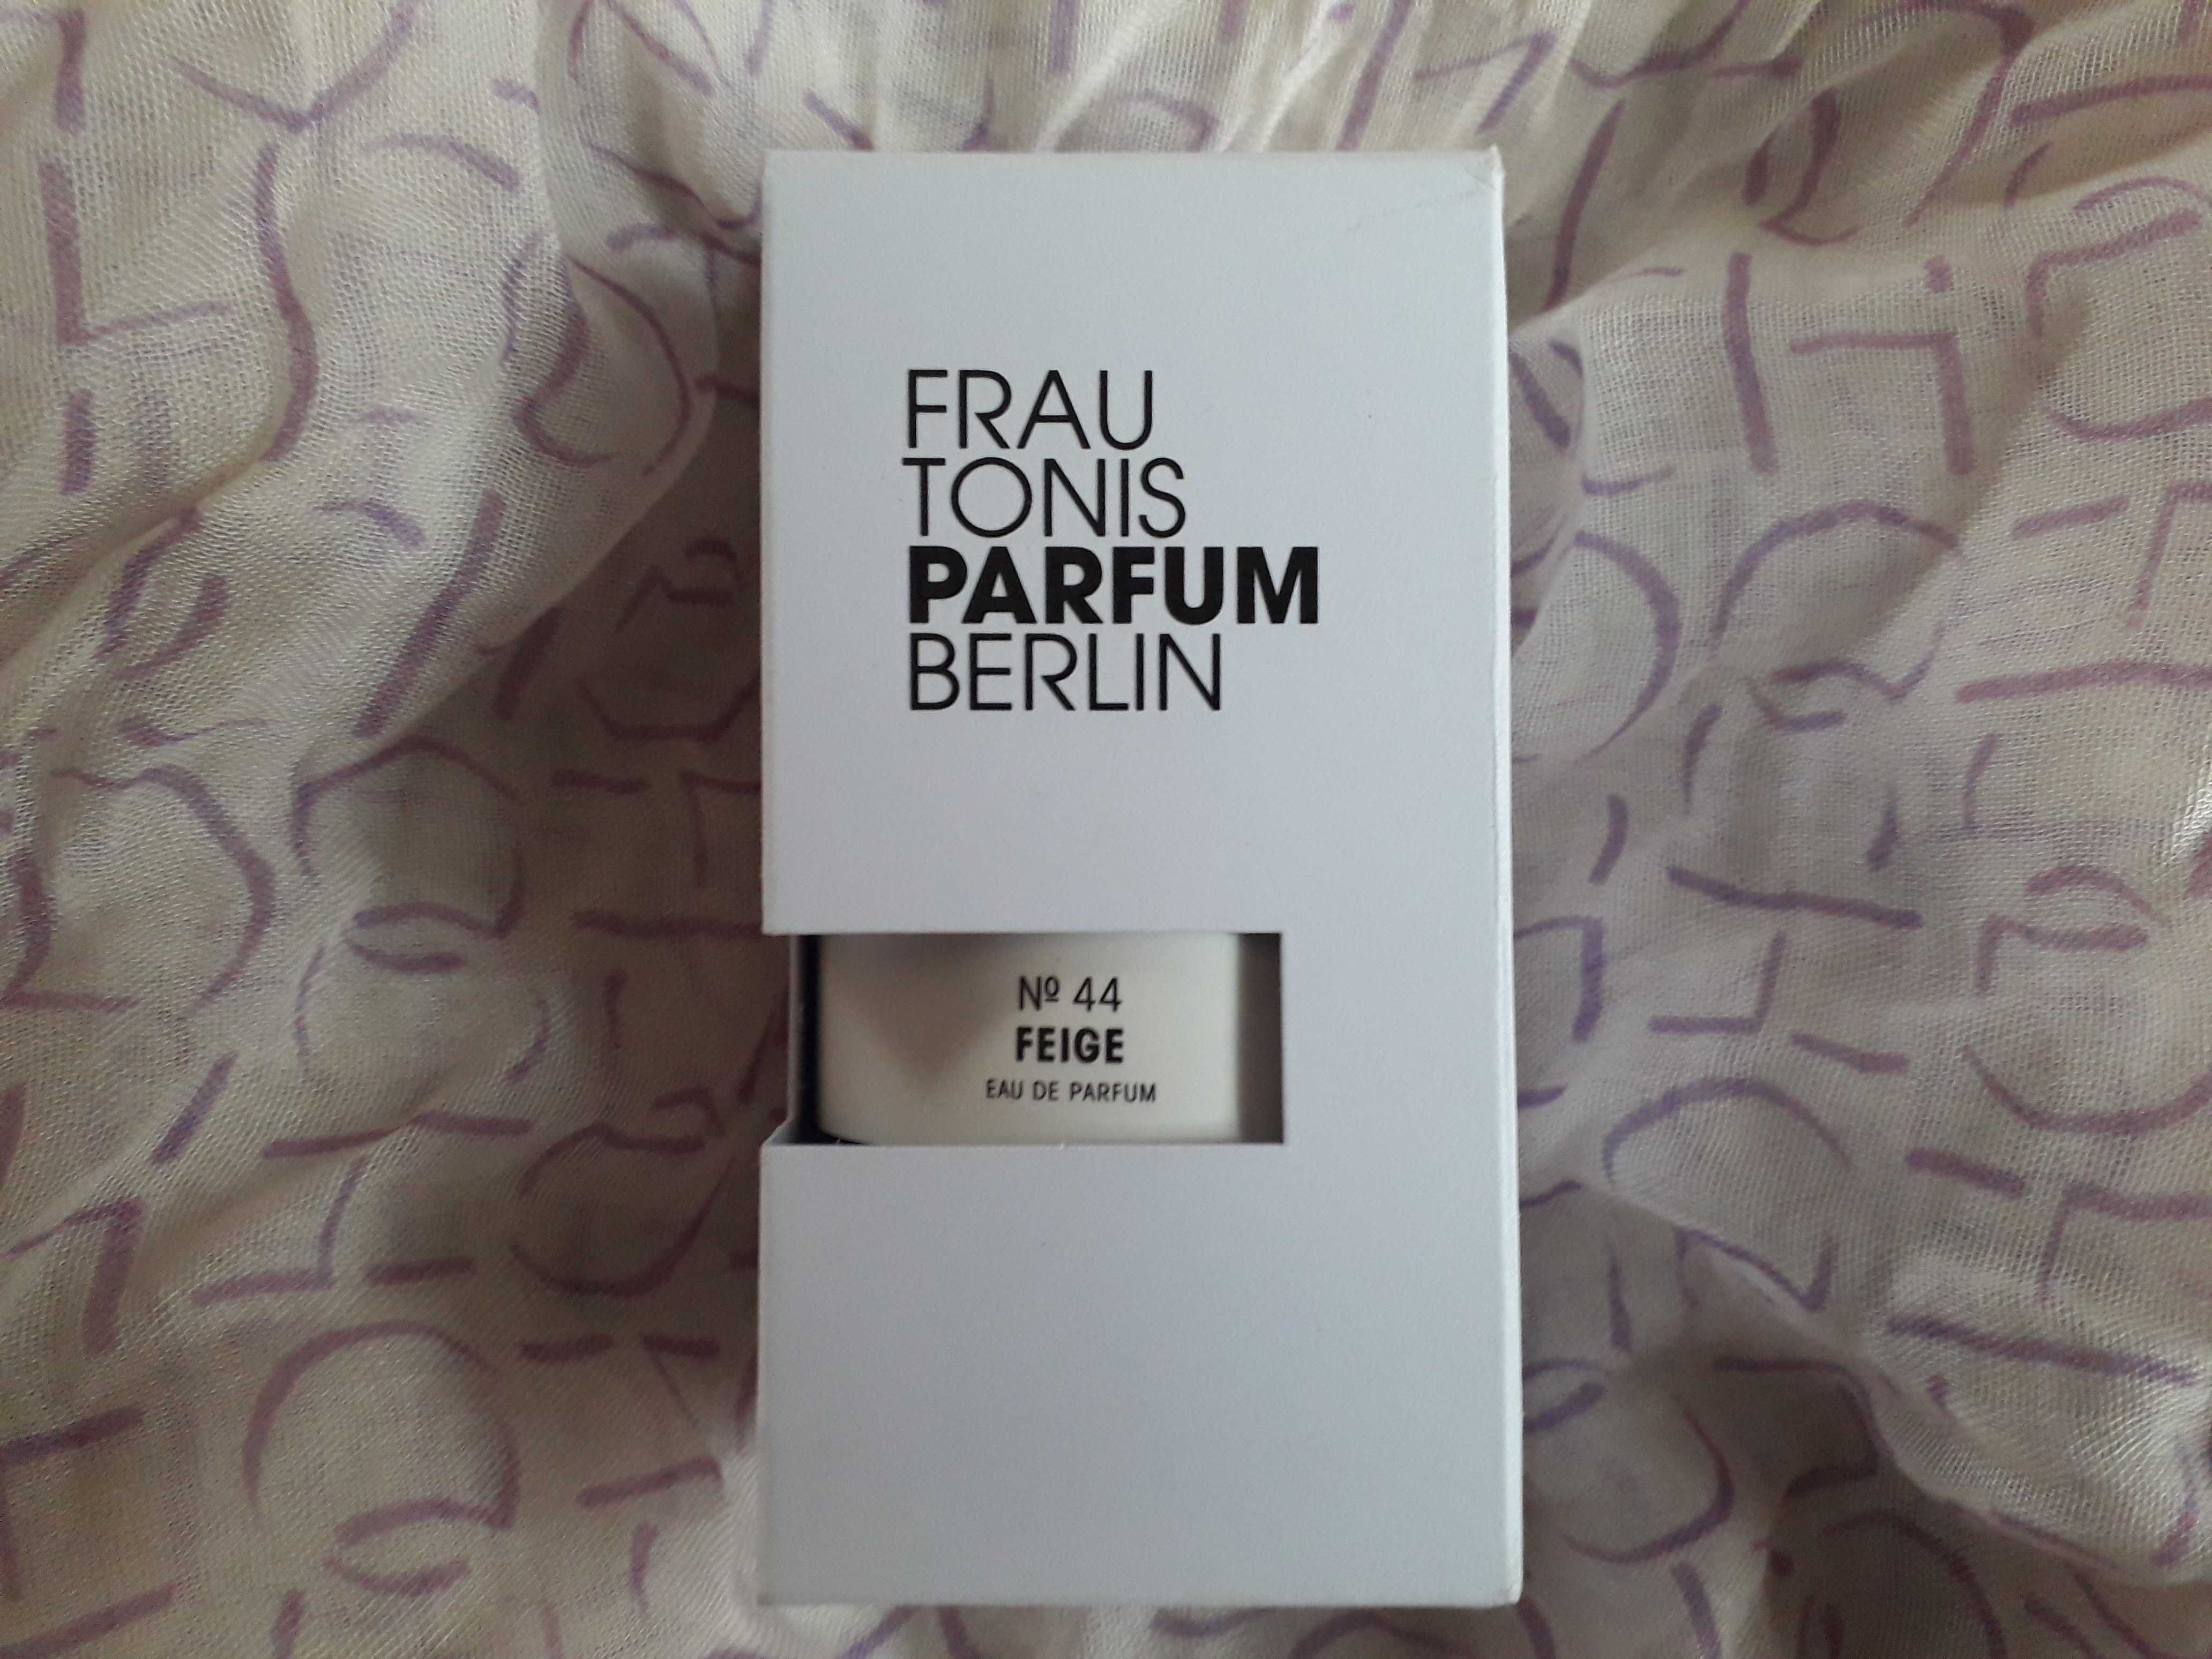 No. 44 Feige Frau Tonis Parfum